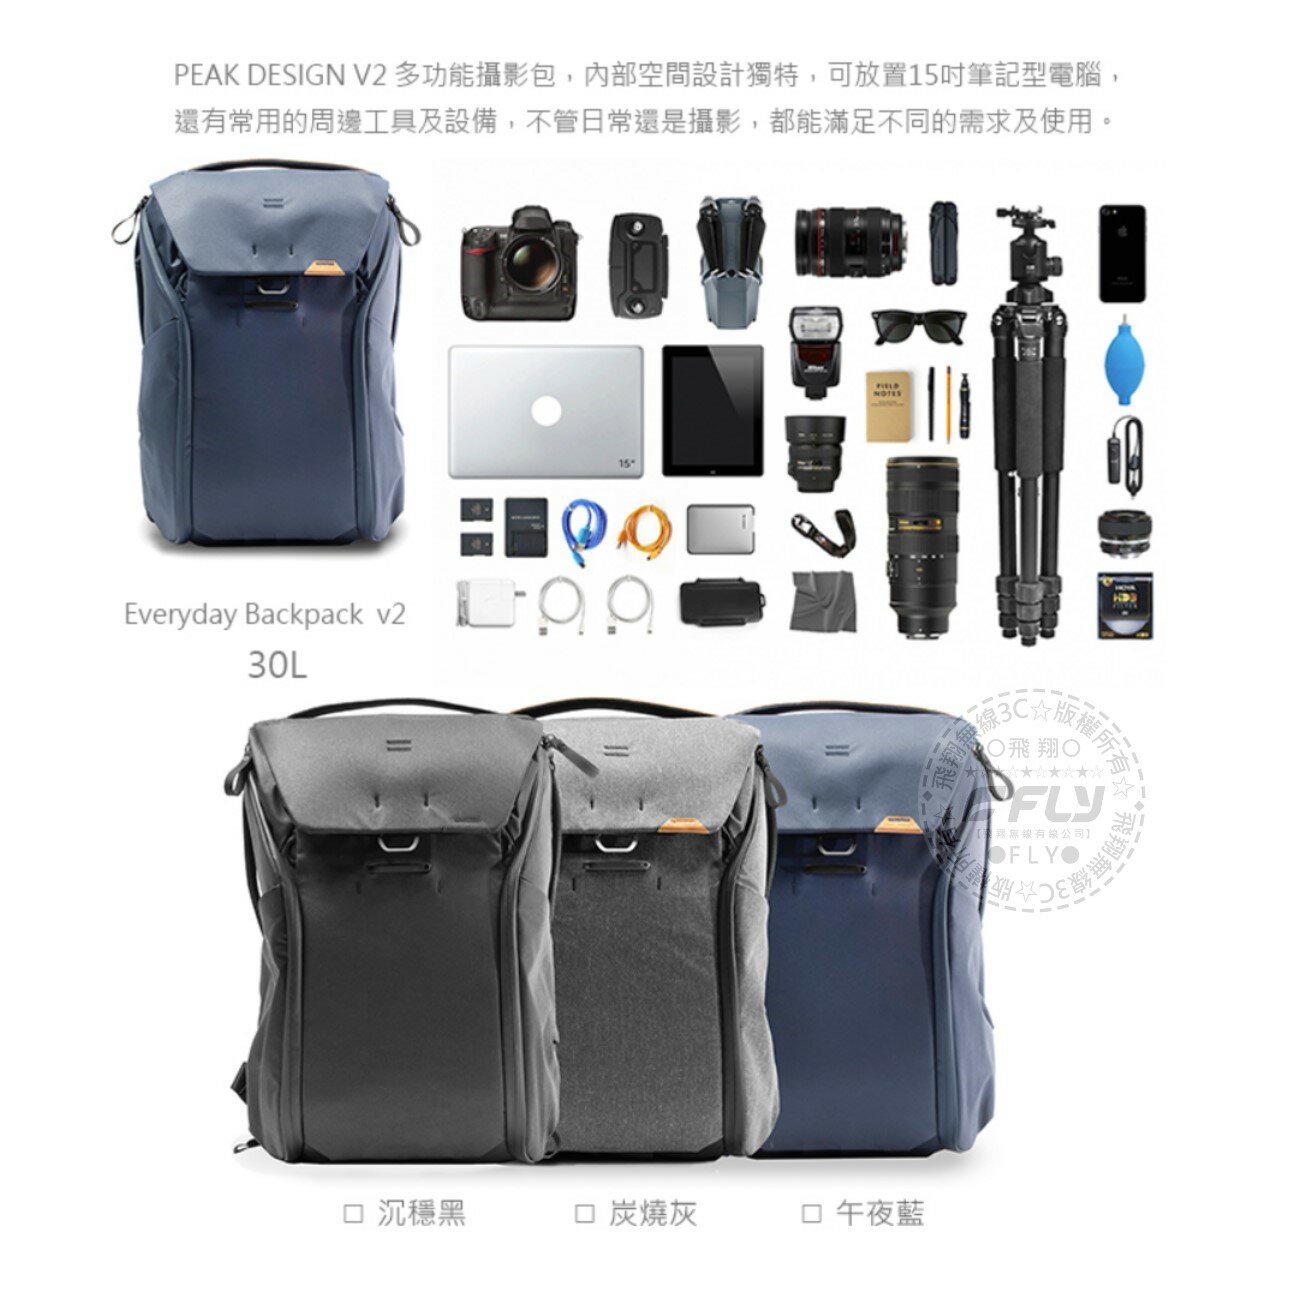 《飛翔無線3C》PEAK DESIGN V2 魔術使者攝影後背包 30L◉台灣公司貨◉單眼相機包◉雙肩後背包 2